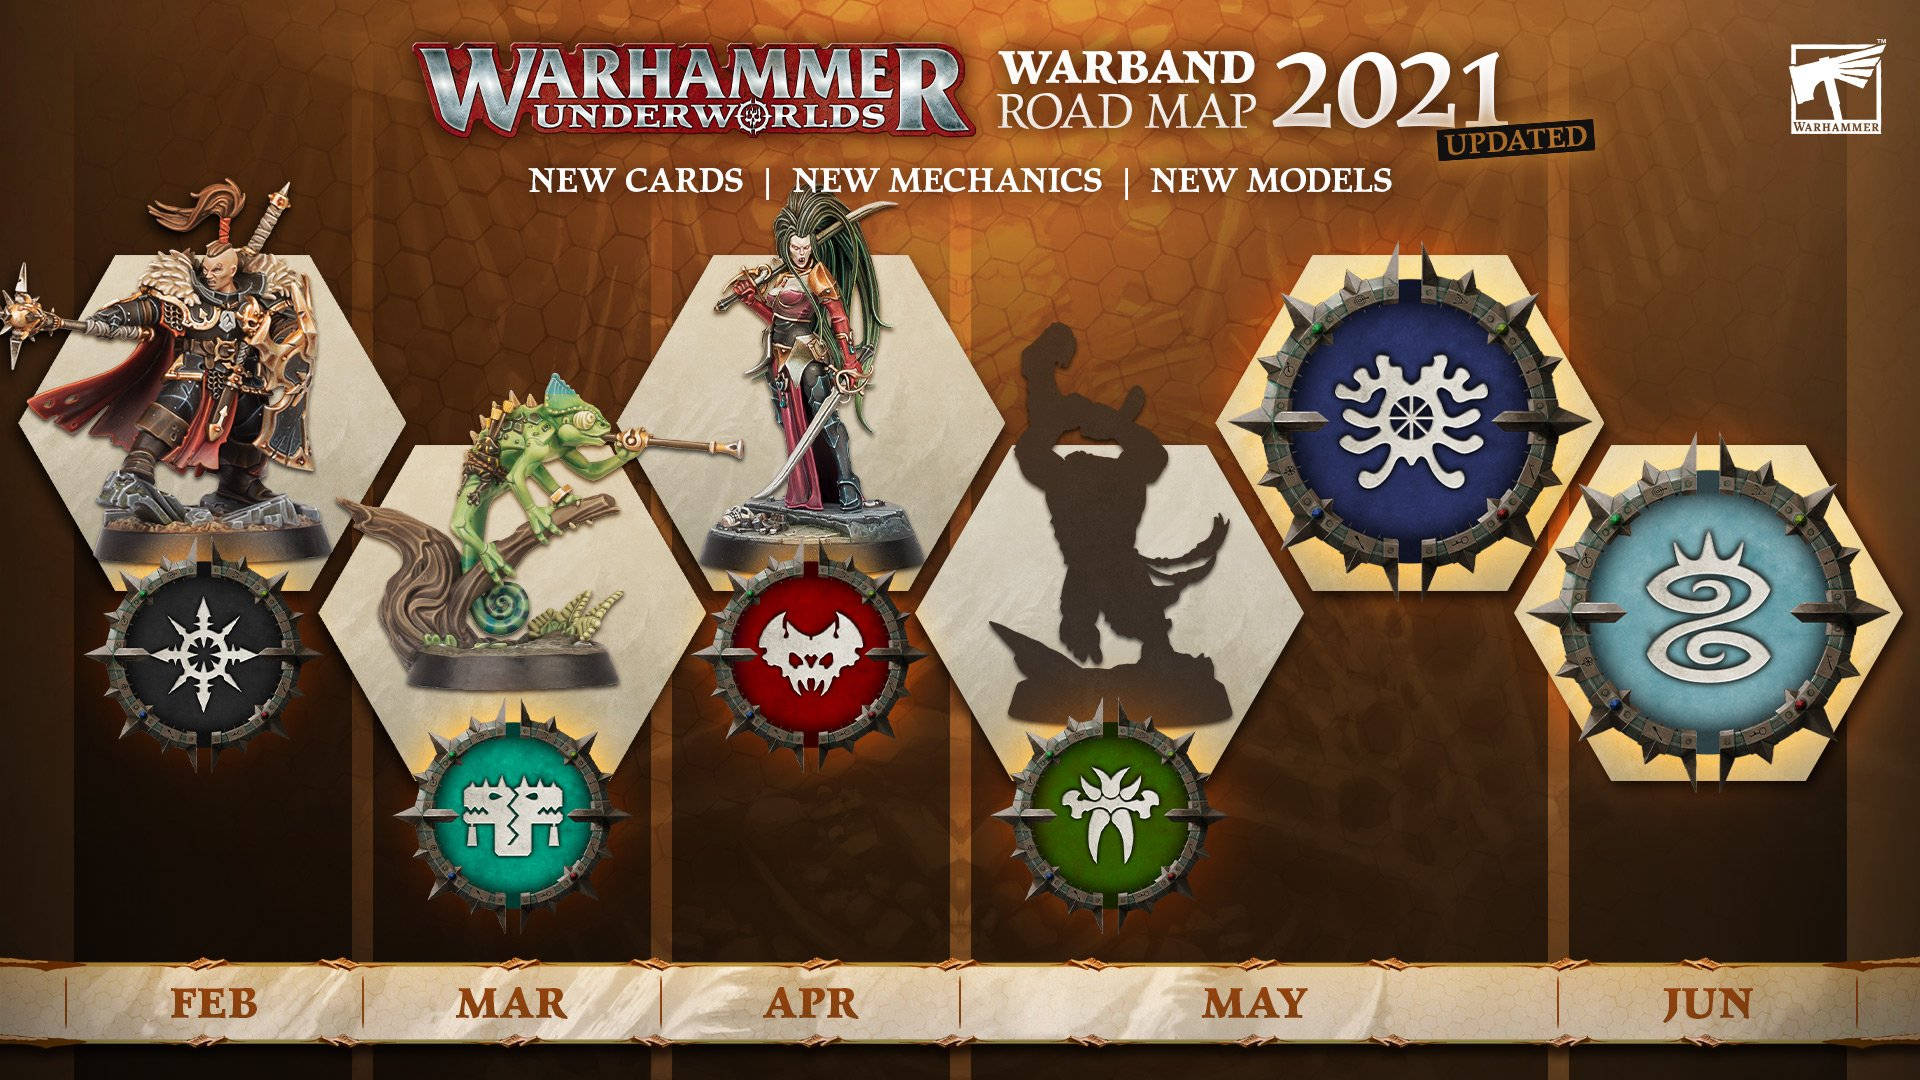 Warhammer Underworlds 2021 Roadmap